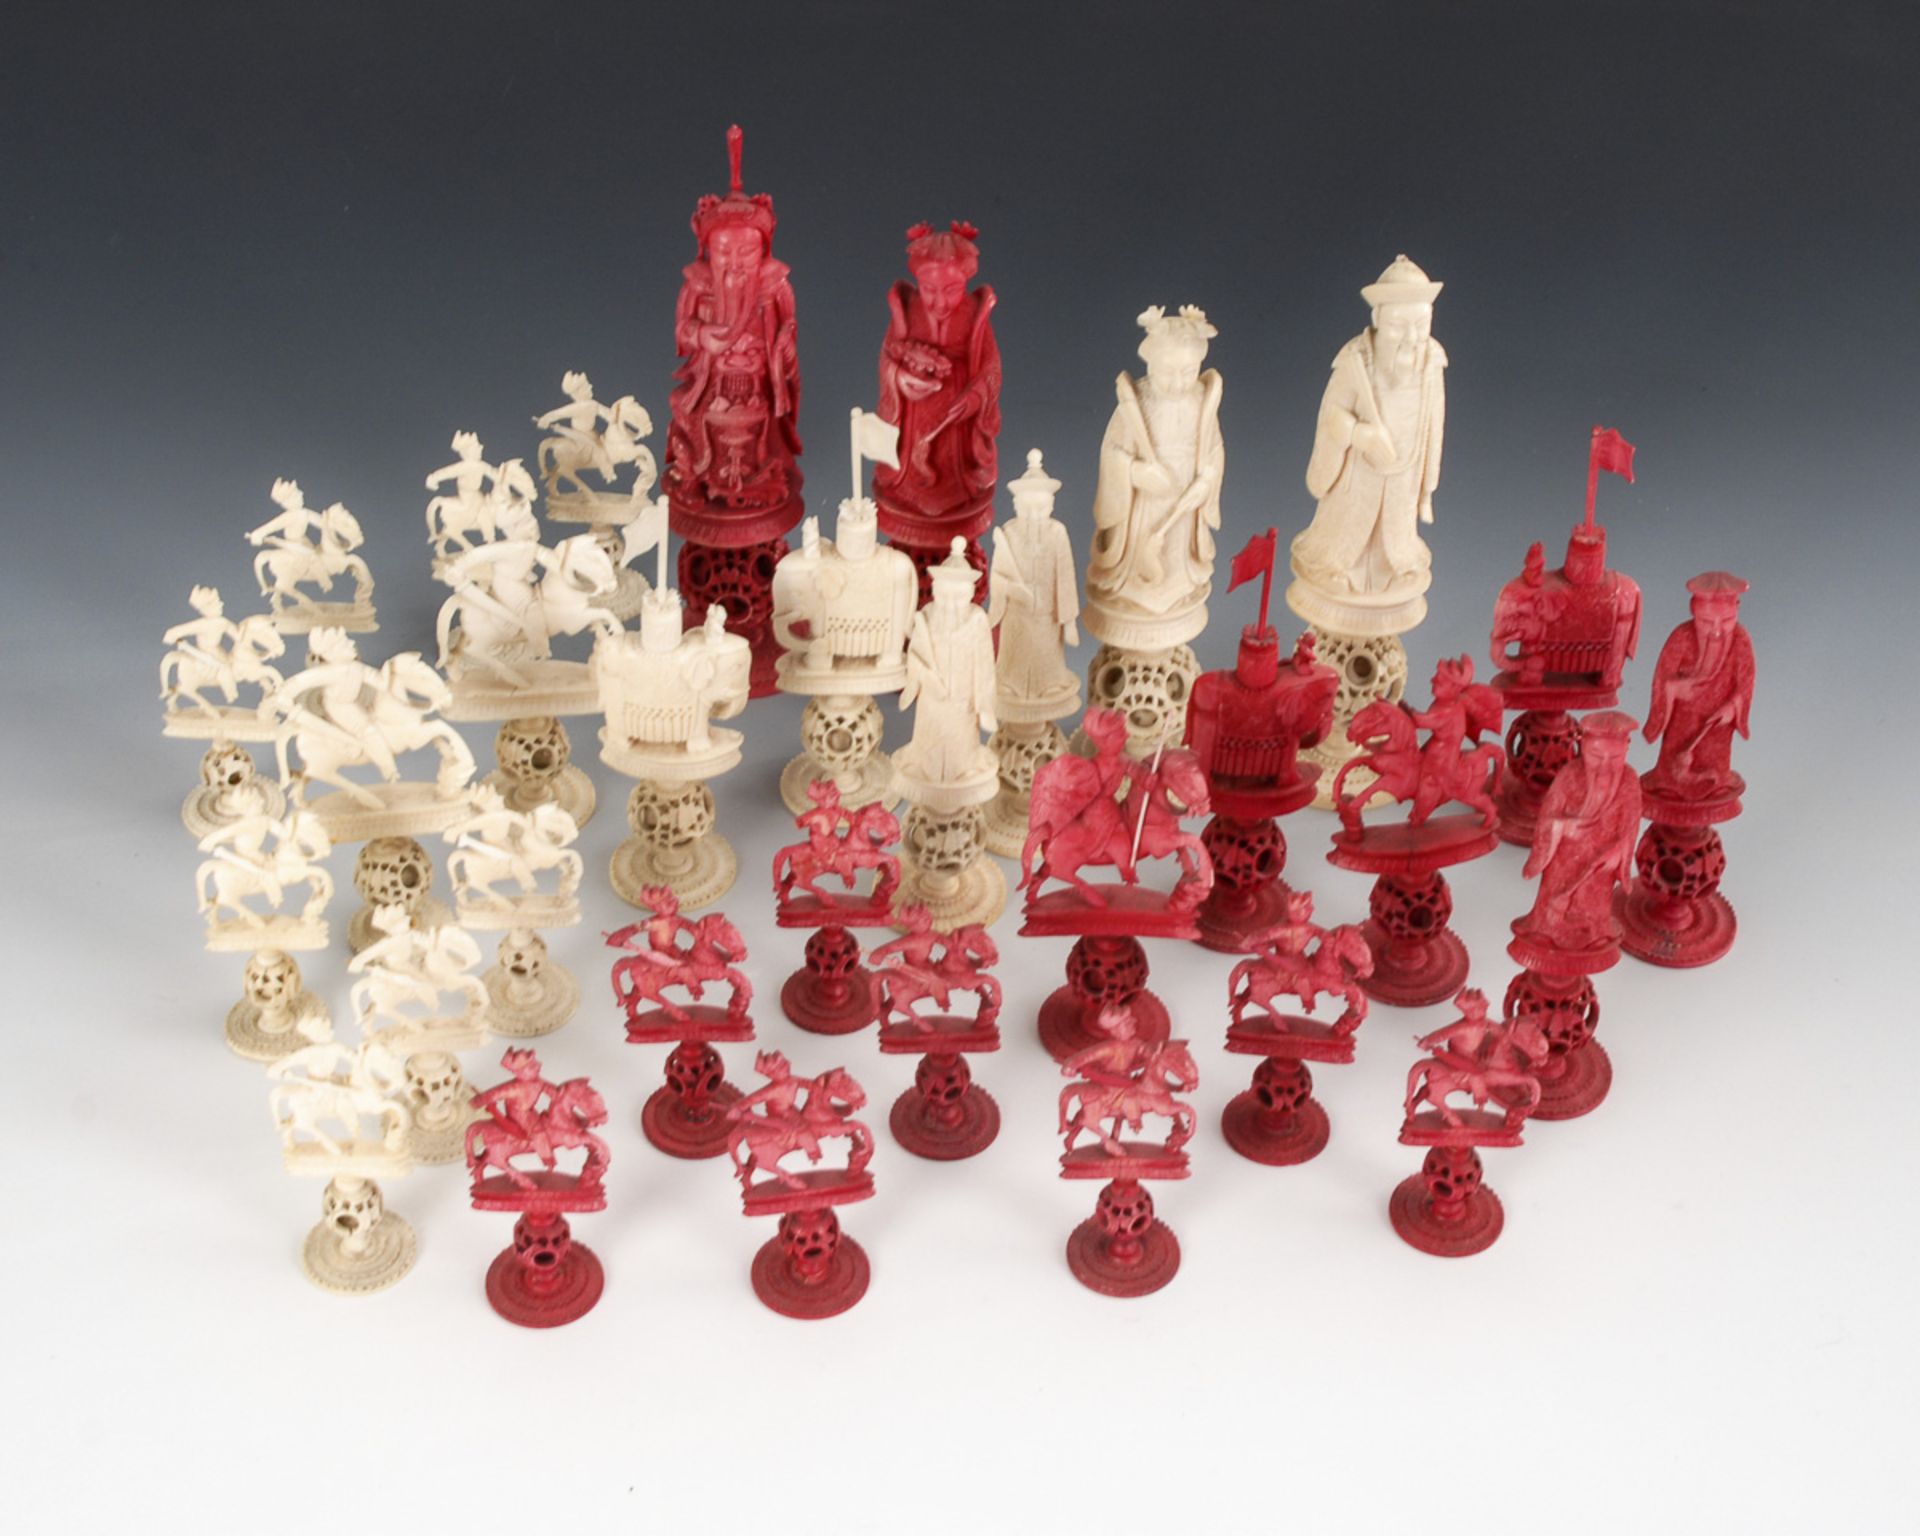 Schachspielfiguren - Elfenbein.China, um 1870, teils rot eingefärbt. Vollständig. Max. H 15 cm.